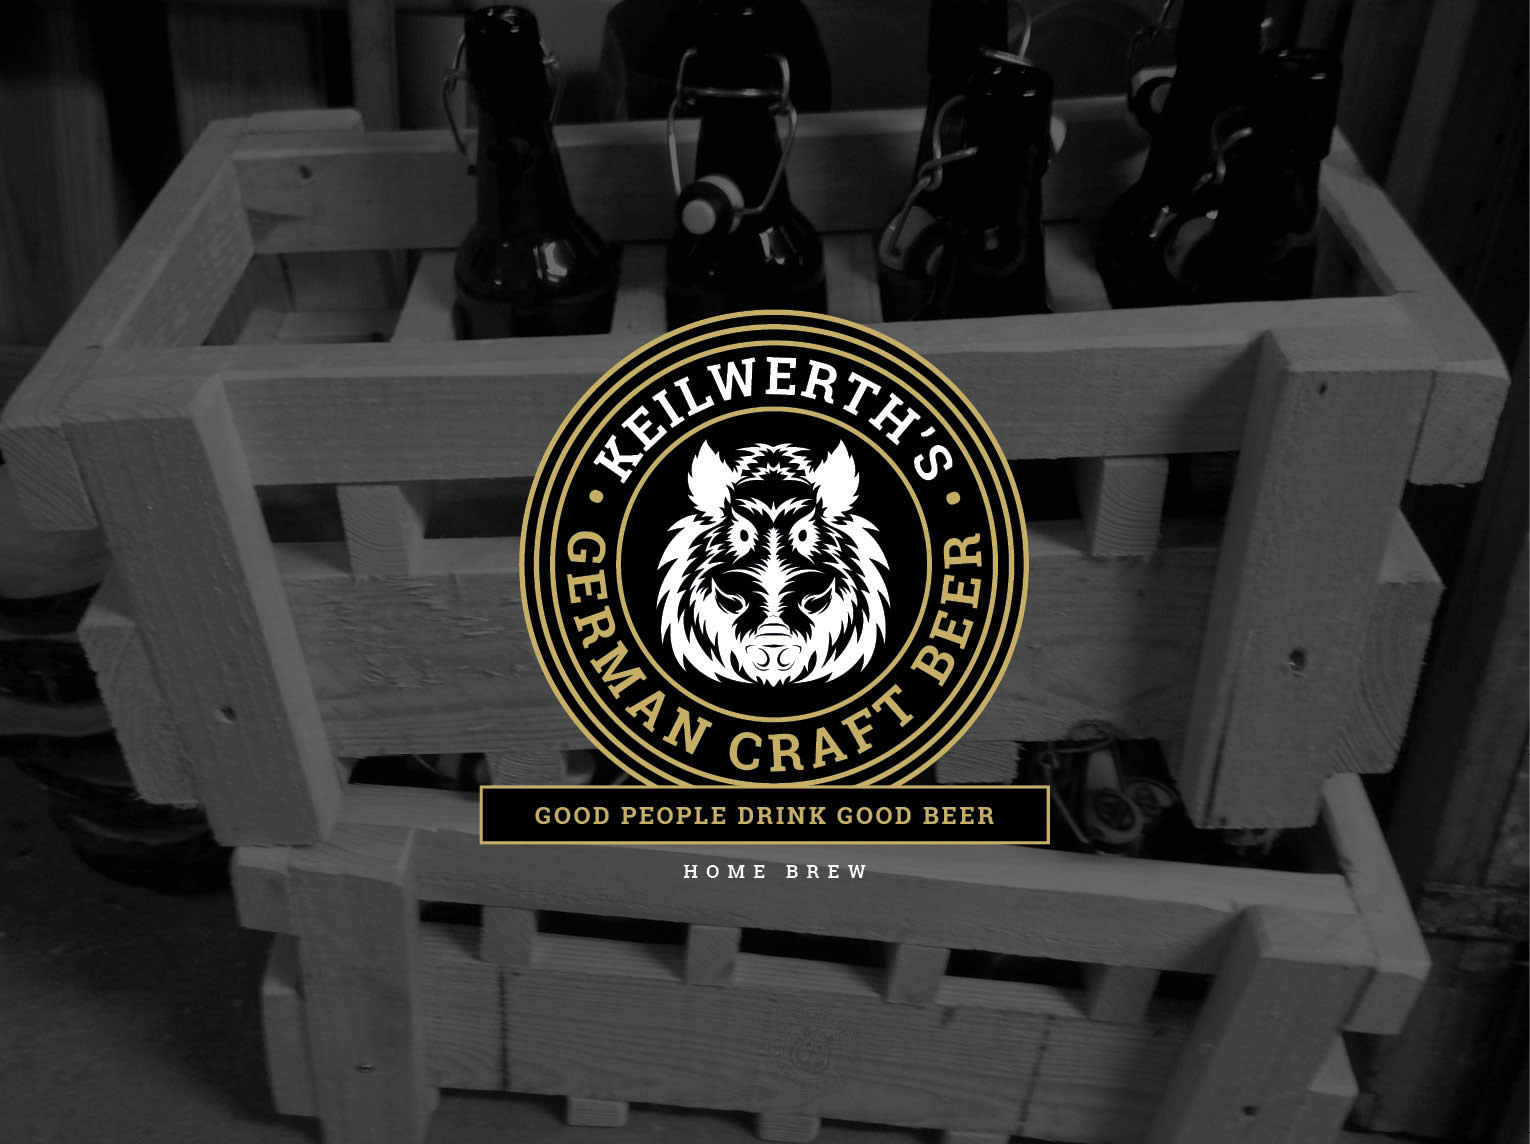 catfish creative für German Craft Beer, dunkles schwarzweiss Foto mit dem Bierkasten aus Holz und Logo